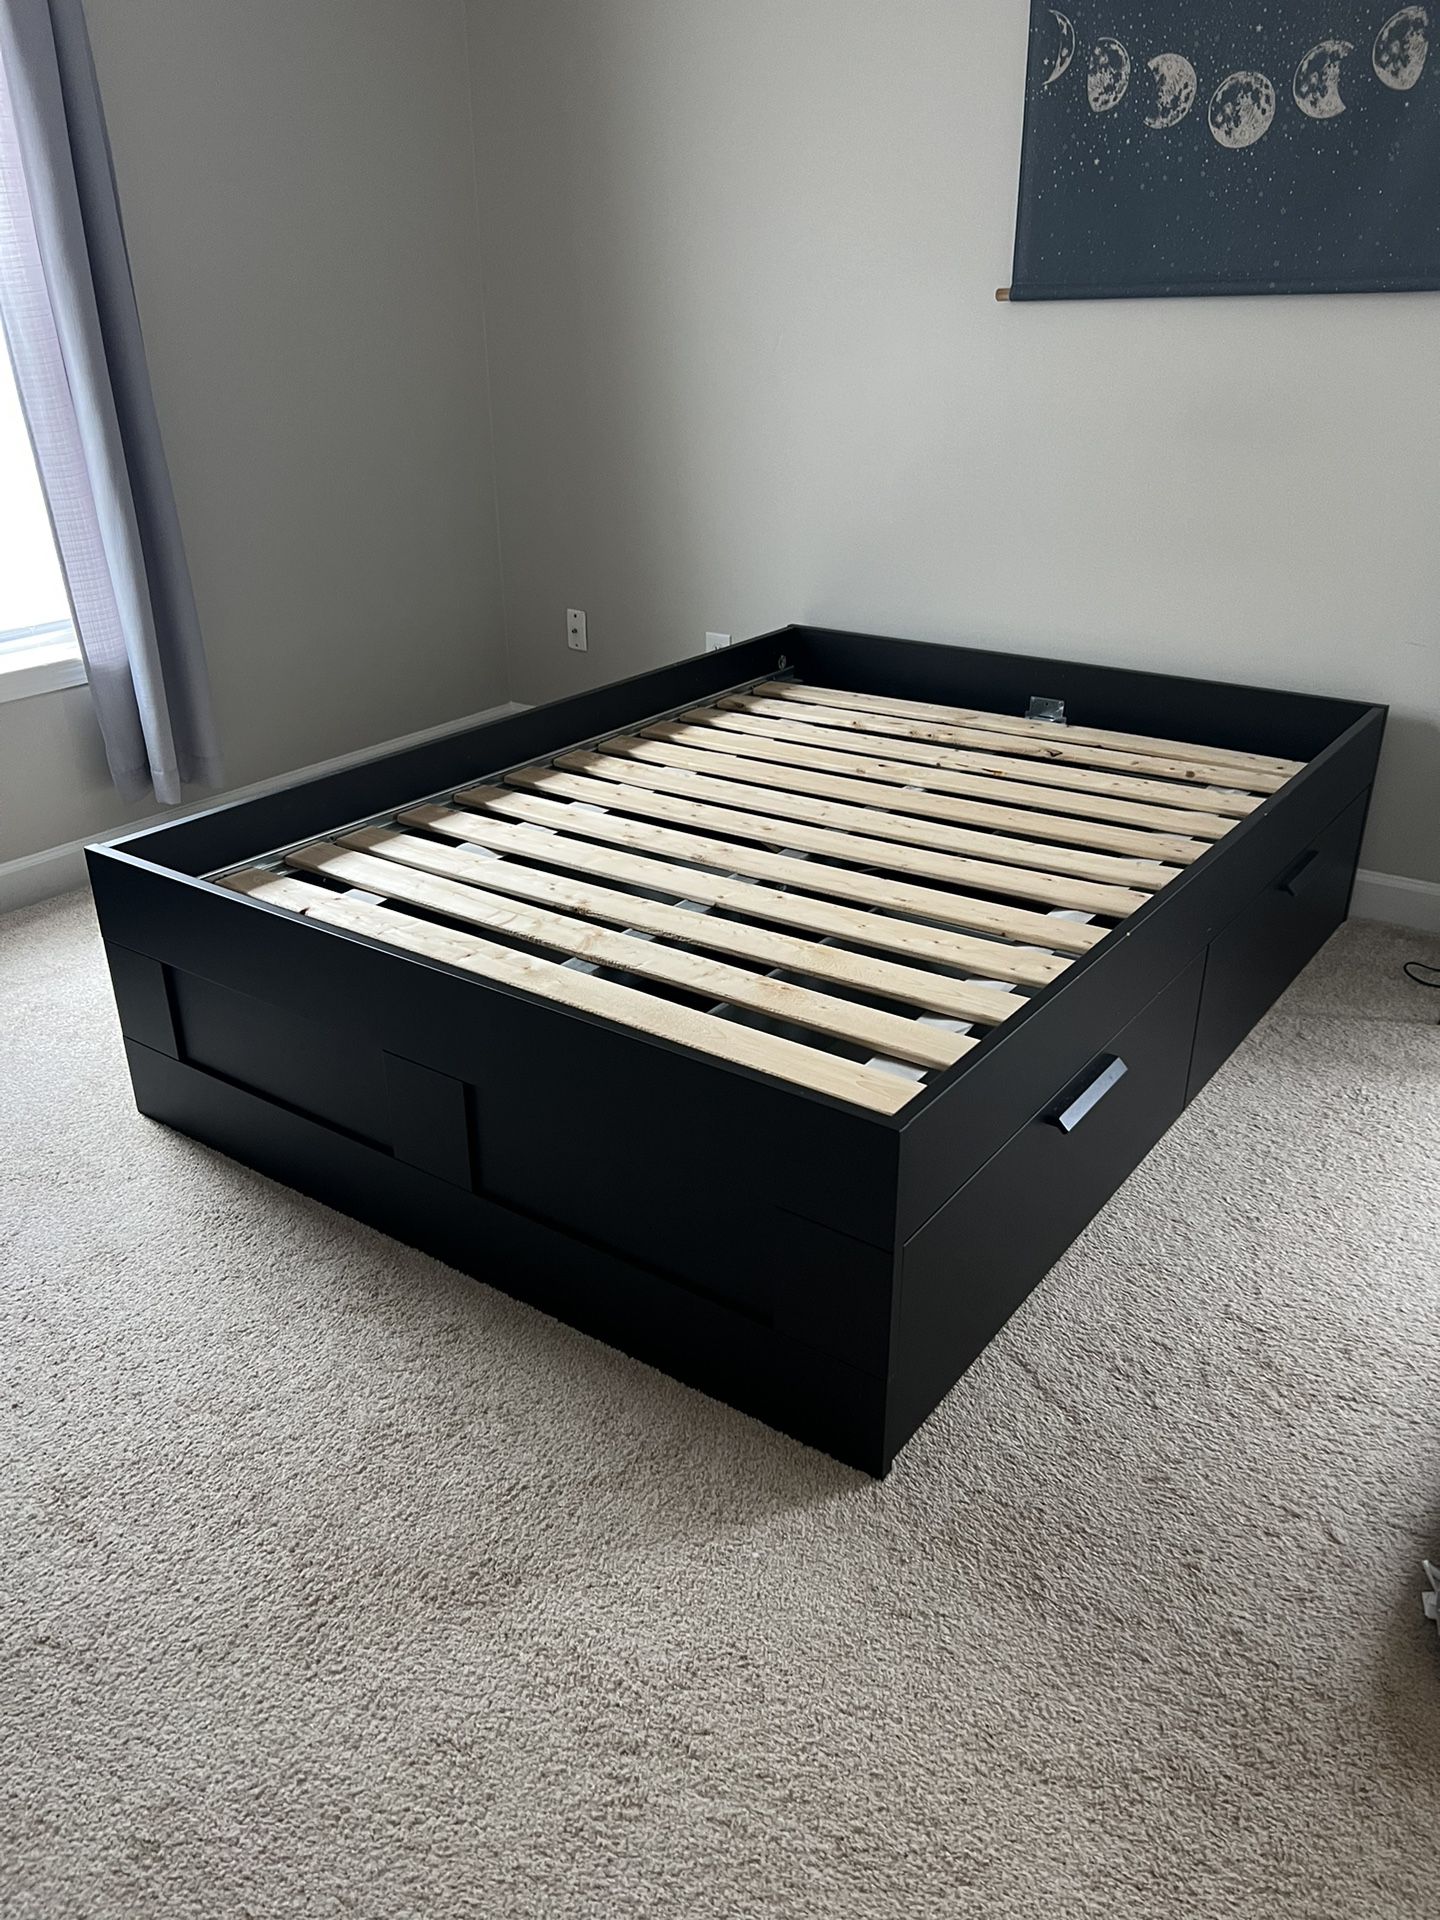 IKEA BRIMNES cama de tamaño cajones en color negro for in Charlotte, NC - OfferUp